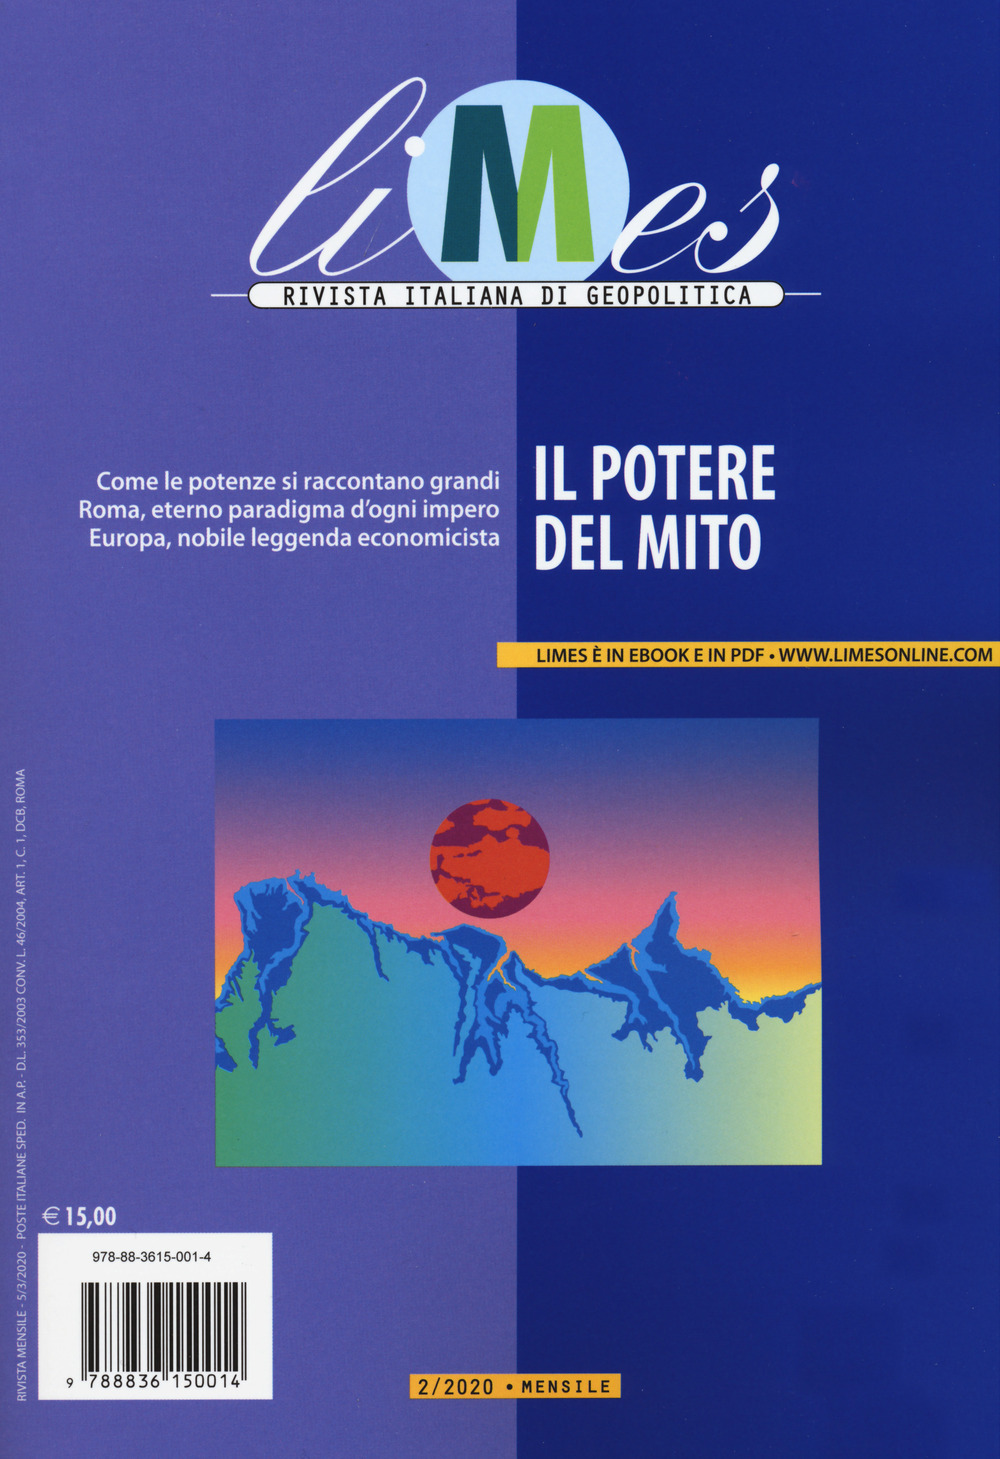 Image of Limes. Rivista italiana di geopolitica (2020). Vol. 2: potere del mito, Il.